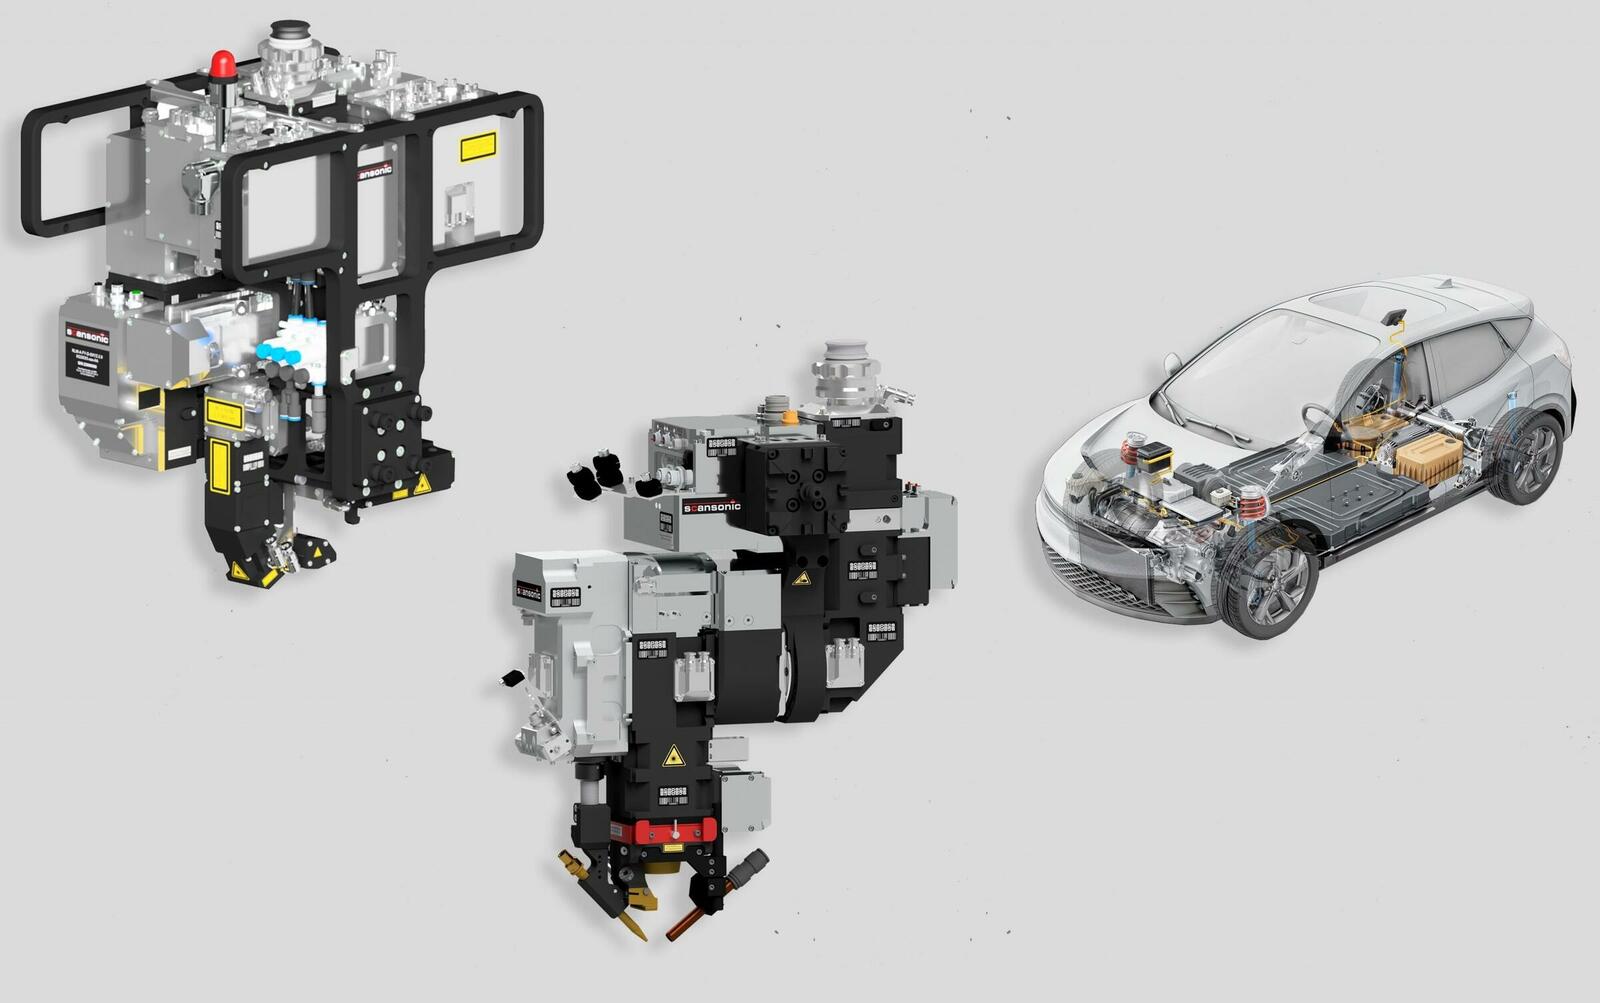 Die Remote-Schweißoptik RLW-A und die ALO4 zum taktilen Laserschweißen eignen sich ausgezeichnet für die Herstellung von Batteriekästen für Elektrofahrzeuge.